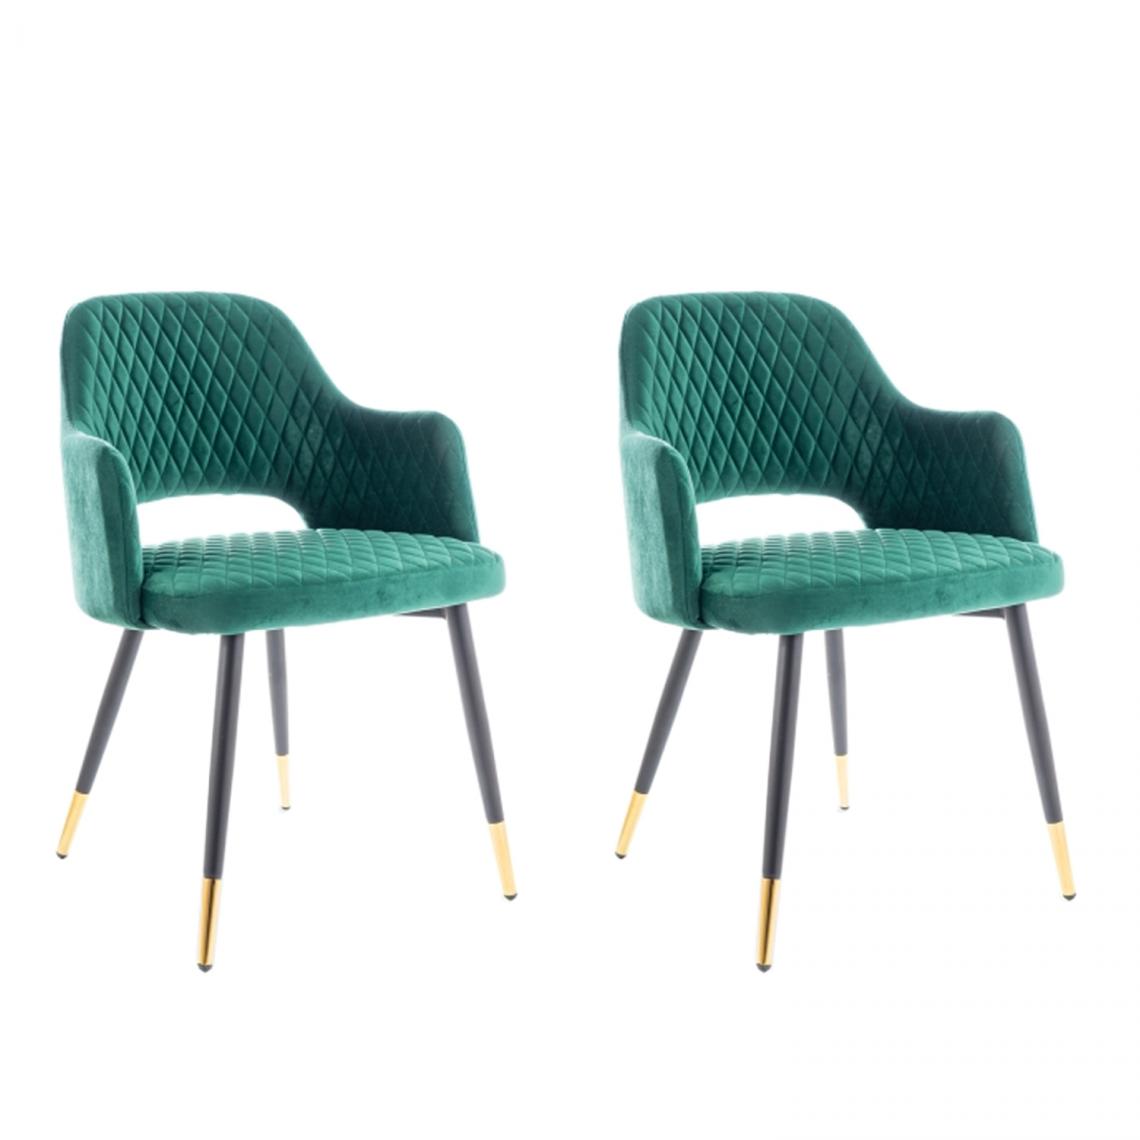 Hucoco - FRANGO - Lot de 2 chaises avec accoudoirs - 82x55x45 cm - Tissu haute qualité - Style scandinave - Vert - Chaises